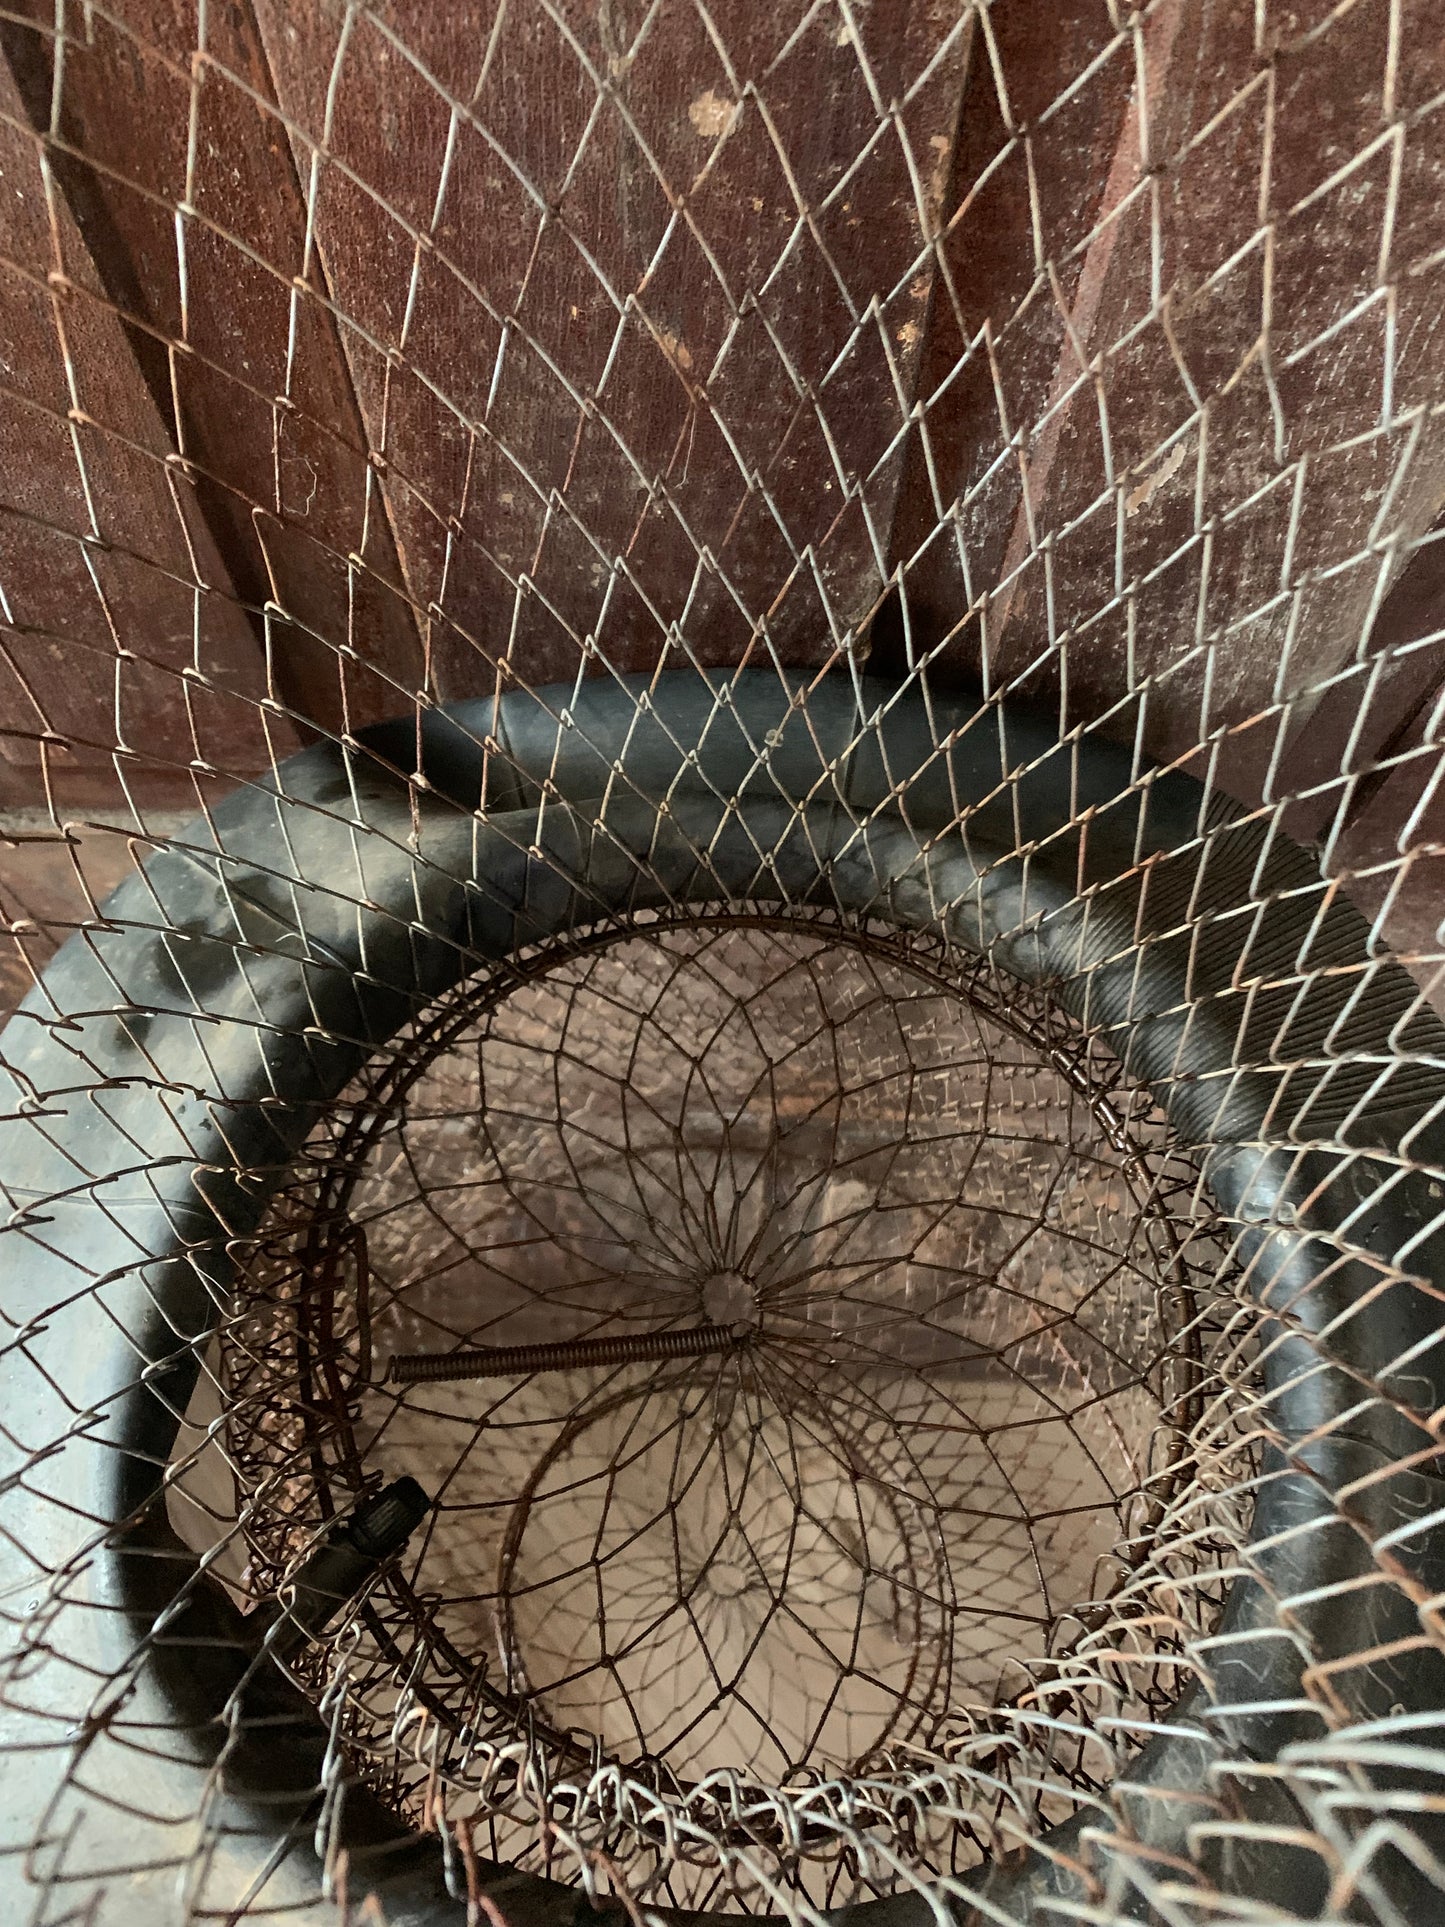 Vintage large metal fishing net